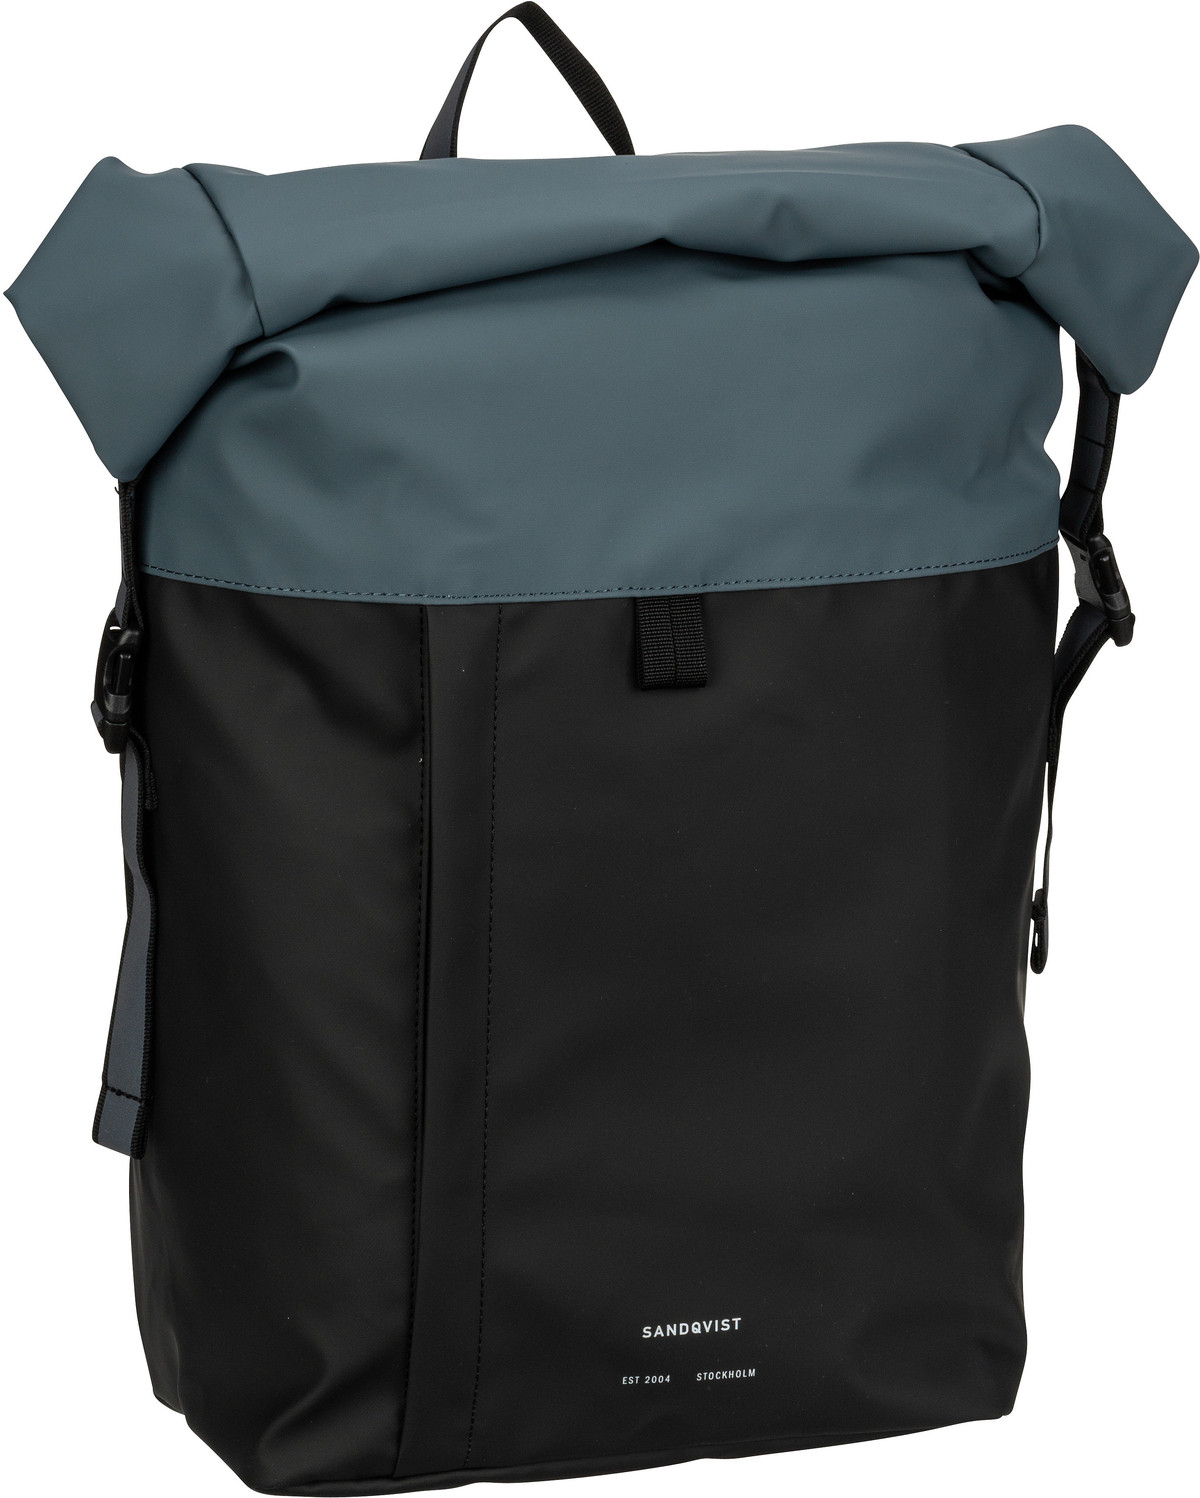 Sandqvist Konrad Backpack - Multi Black/Steel Blue